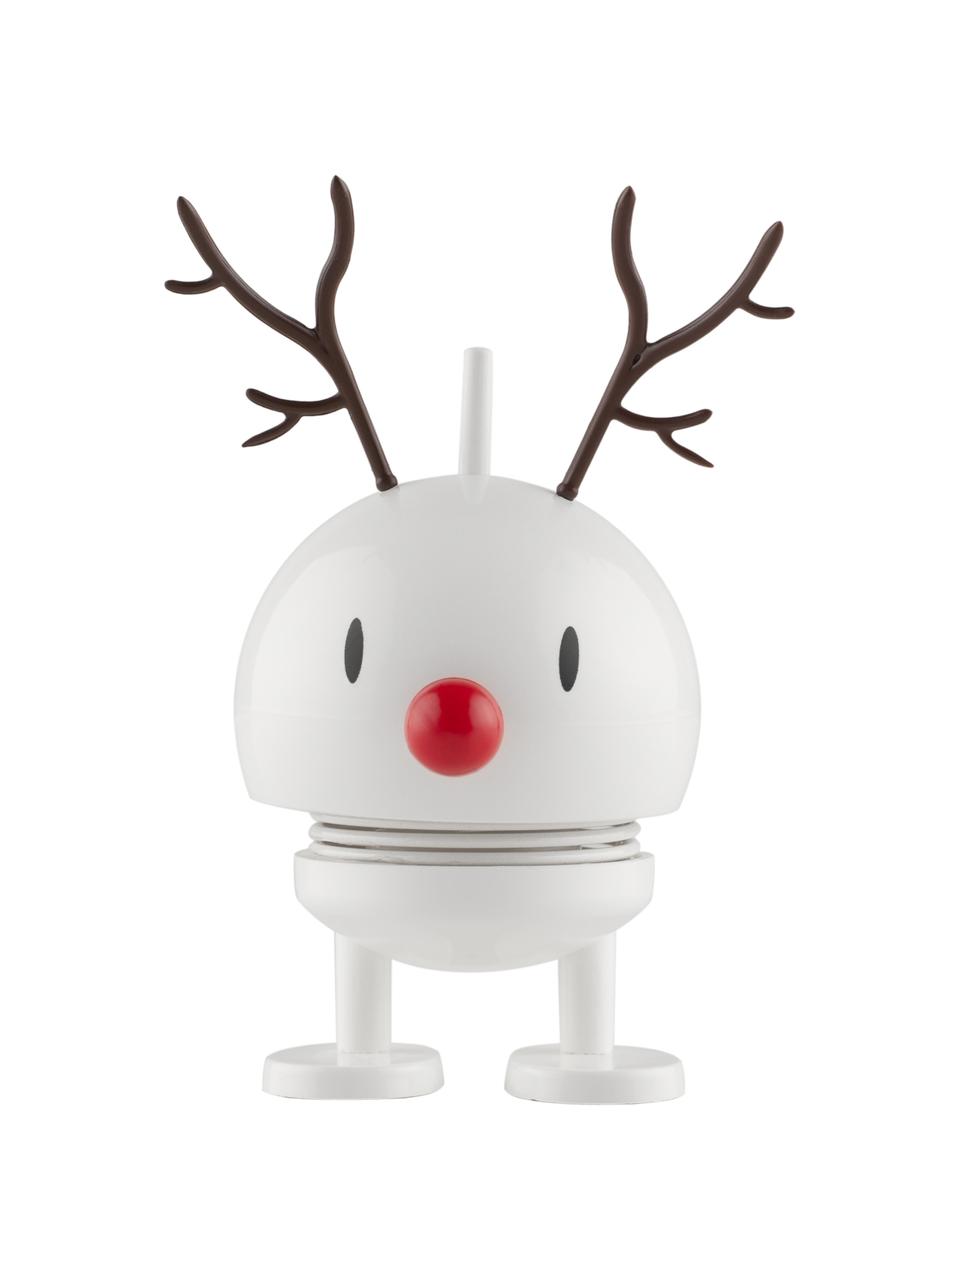 Objet décoratif Reindeer Bumble, Plastique, métal, Blanc, noir, rouge, Ø 5 x haut. 9 cm